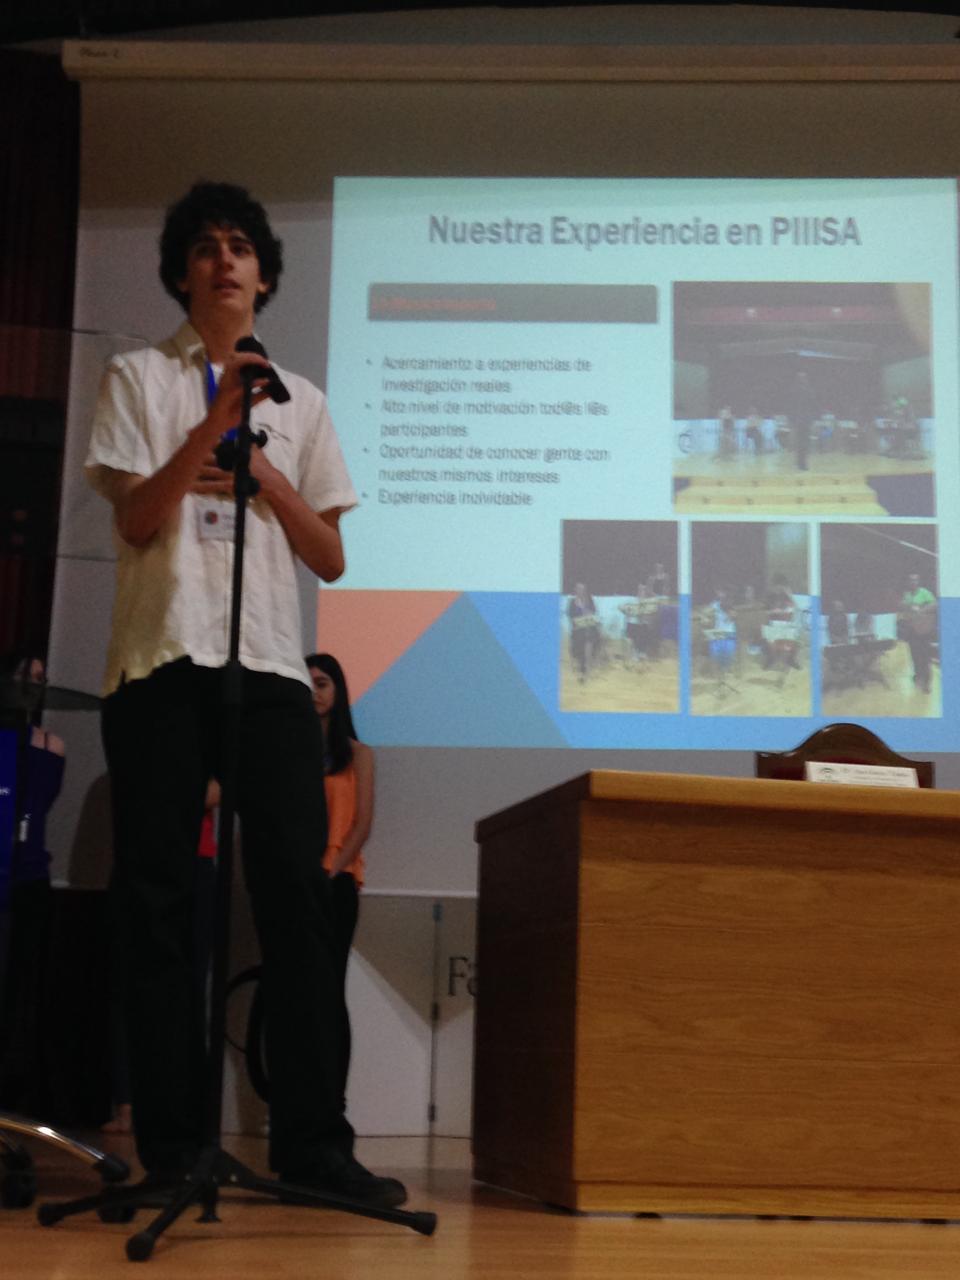 Estudiante durante una exposición en PIIISA 2015